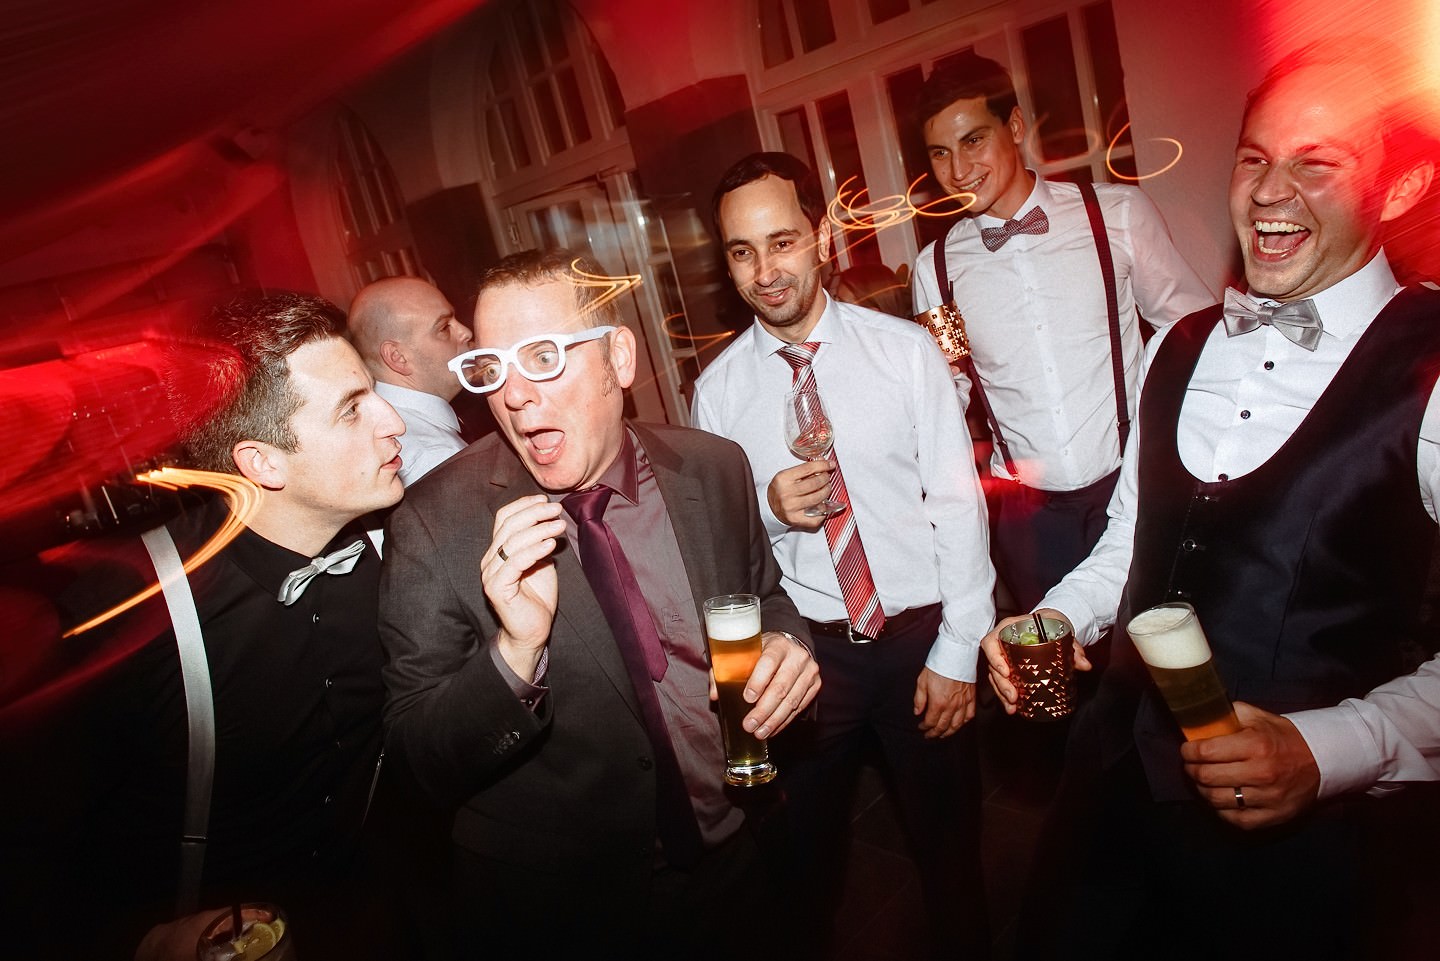 Gast mit Brille, Bräutigam mit Bier und Drink bei der Hochzeit